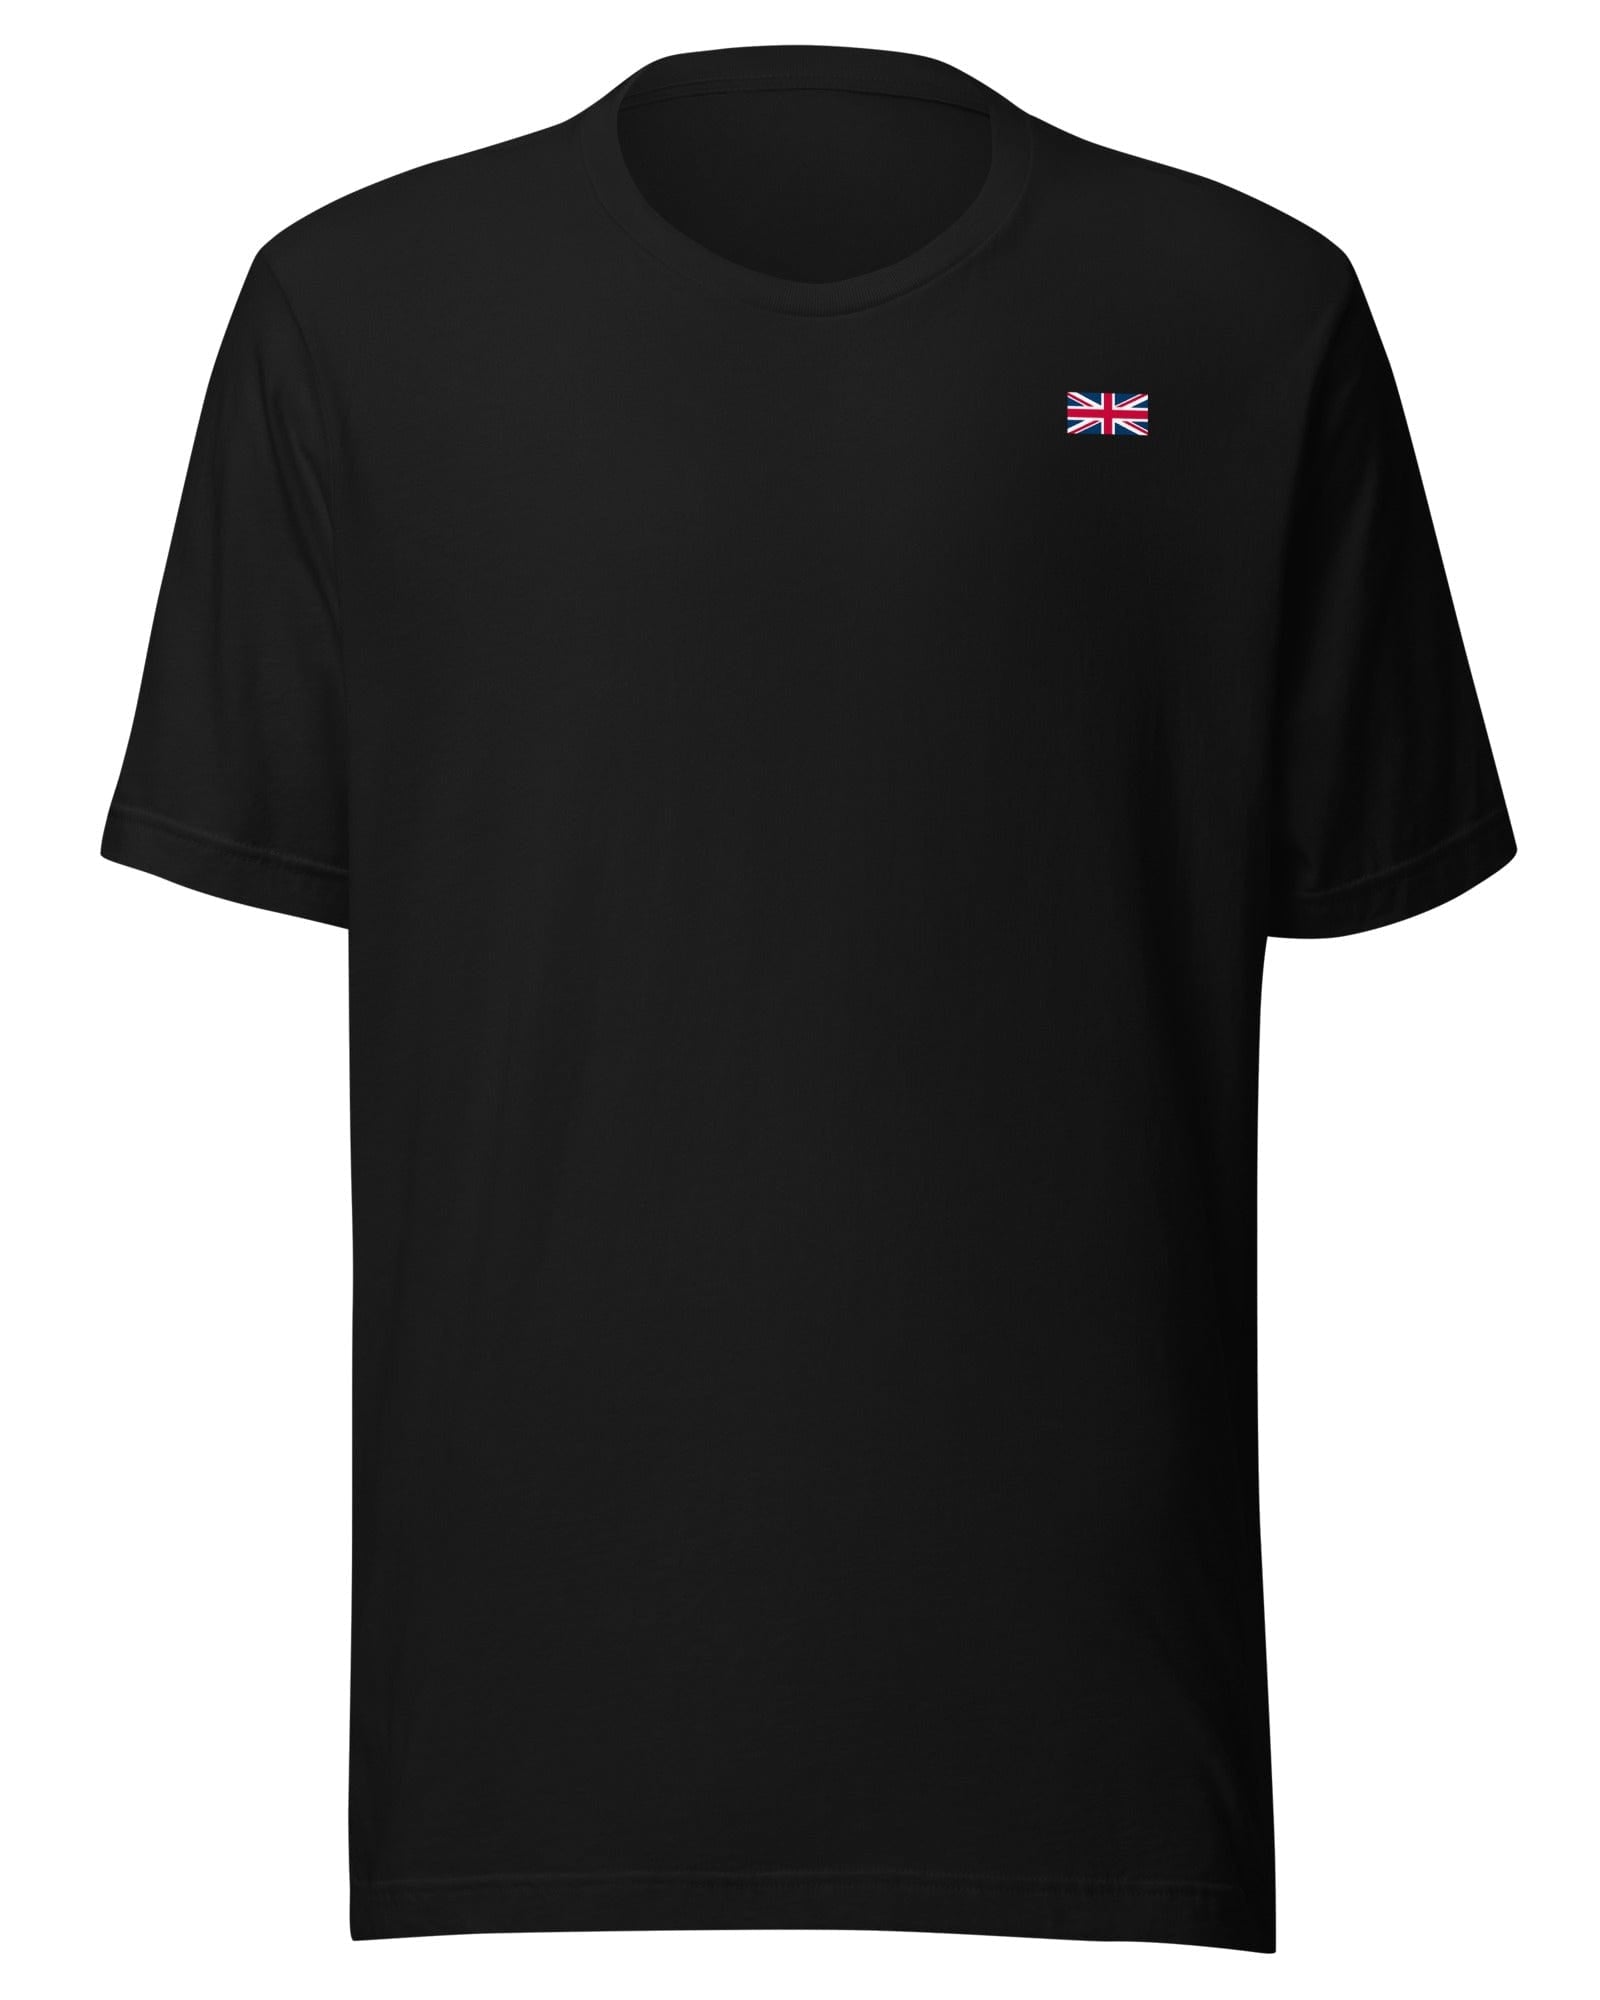 Union Jack T-shirt | Left Chest | Subtle Black / S Shirts & Tops Jolly & Goode